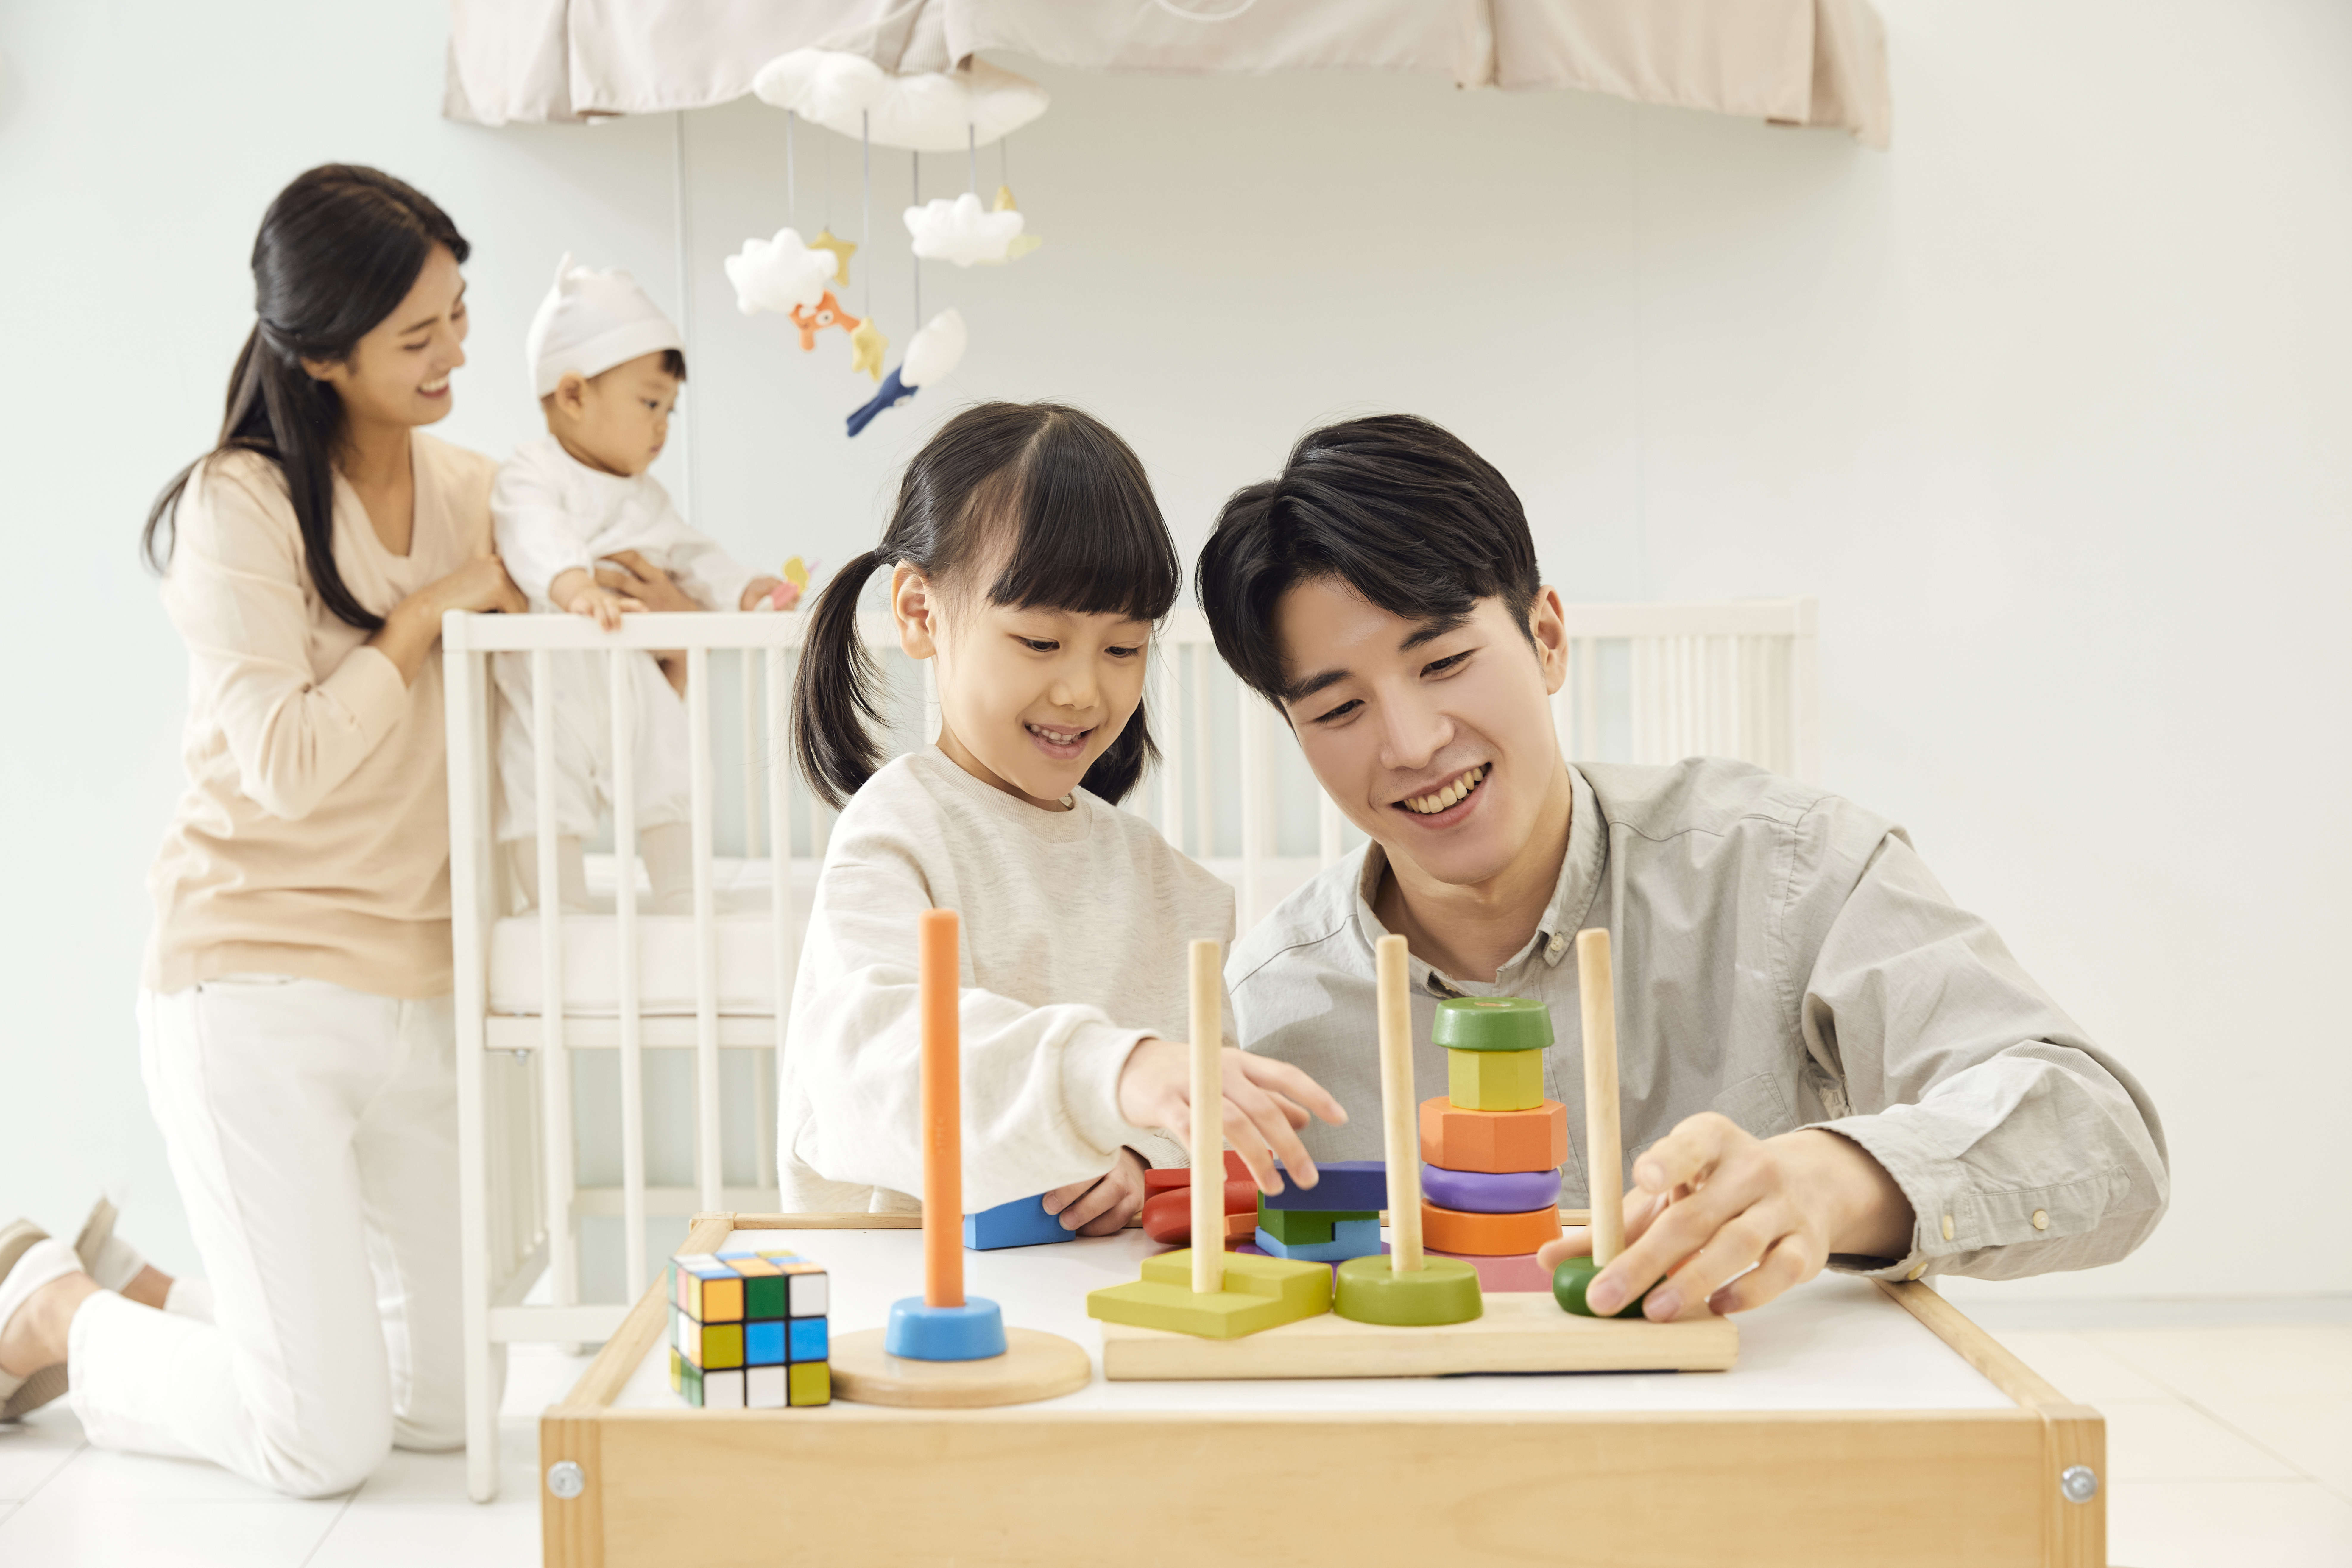 유아 홈스쿨링, 집에서 아이와 몸으로 놀아주는 유아 놀이 7가지 방법!